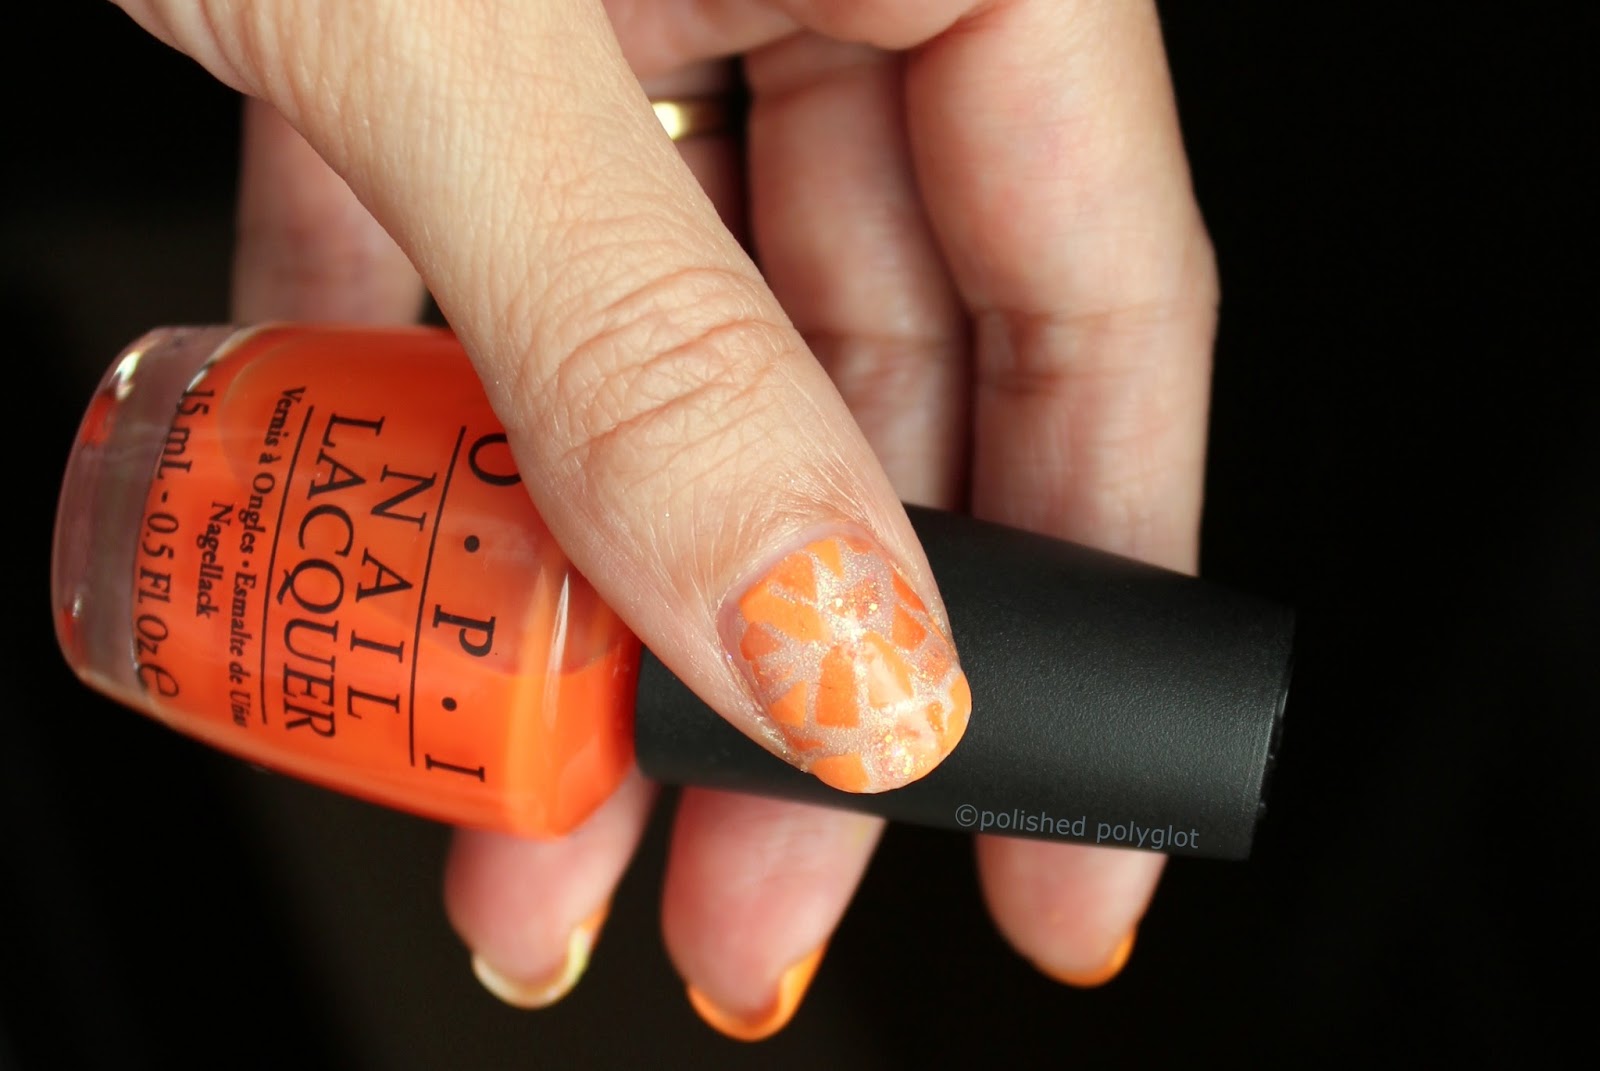 NOTD | Mosaic nails using three shades of Orange / Polished Polyglot